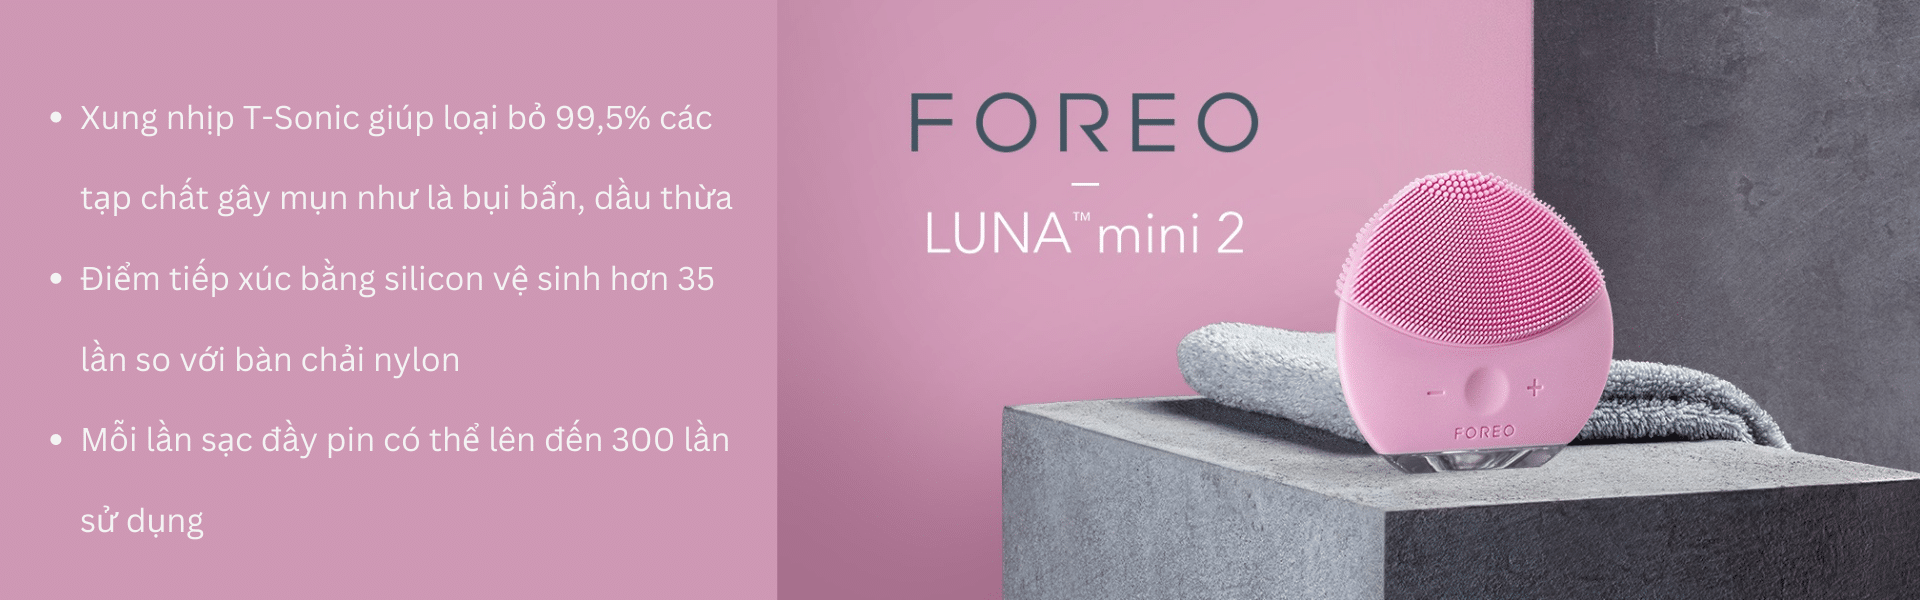 máy rửa mặt Foreo Luna Mini 2 là sản phẩm xứng đáng đầu tư để có làn da khoẻ đẹp